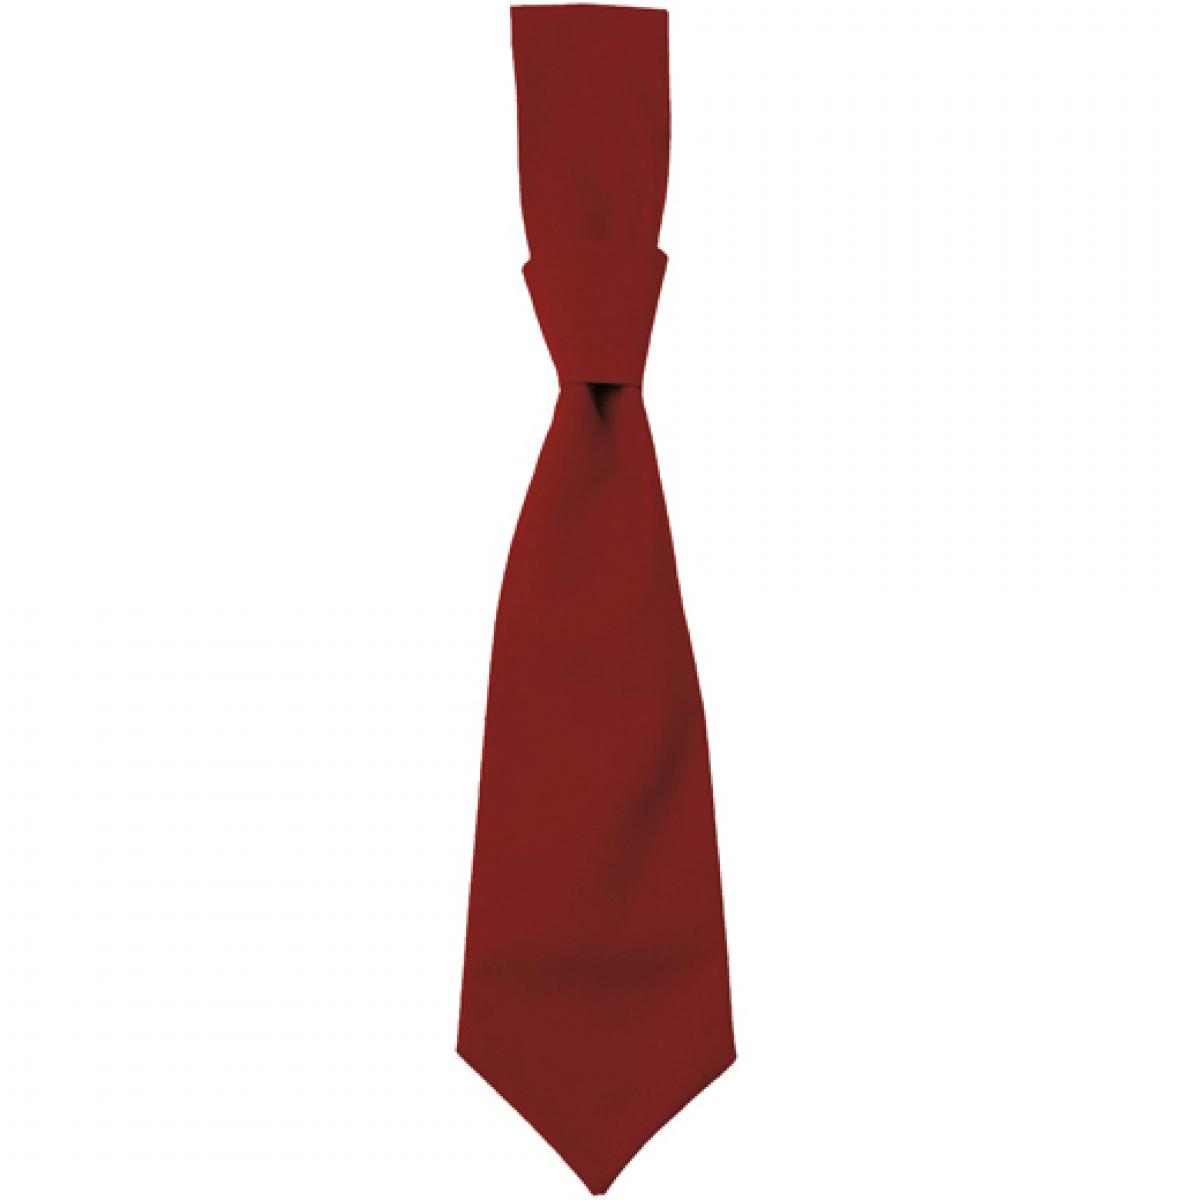 Hersteller: CG Workwear Herstellernummer: 01360-01 Artikelbezeichnung: Krawatte Messina / Zertifiziert nach Oeko-Tex 100 Farbe: Copper